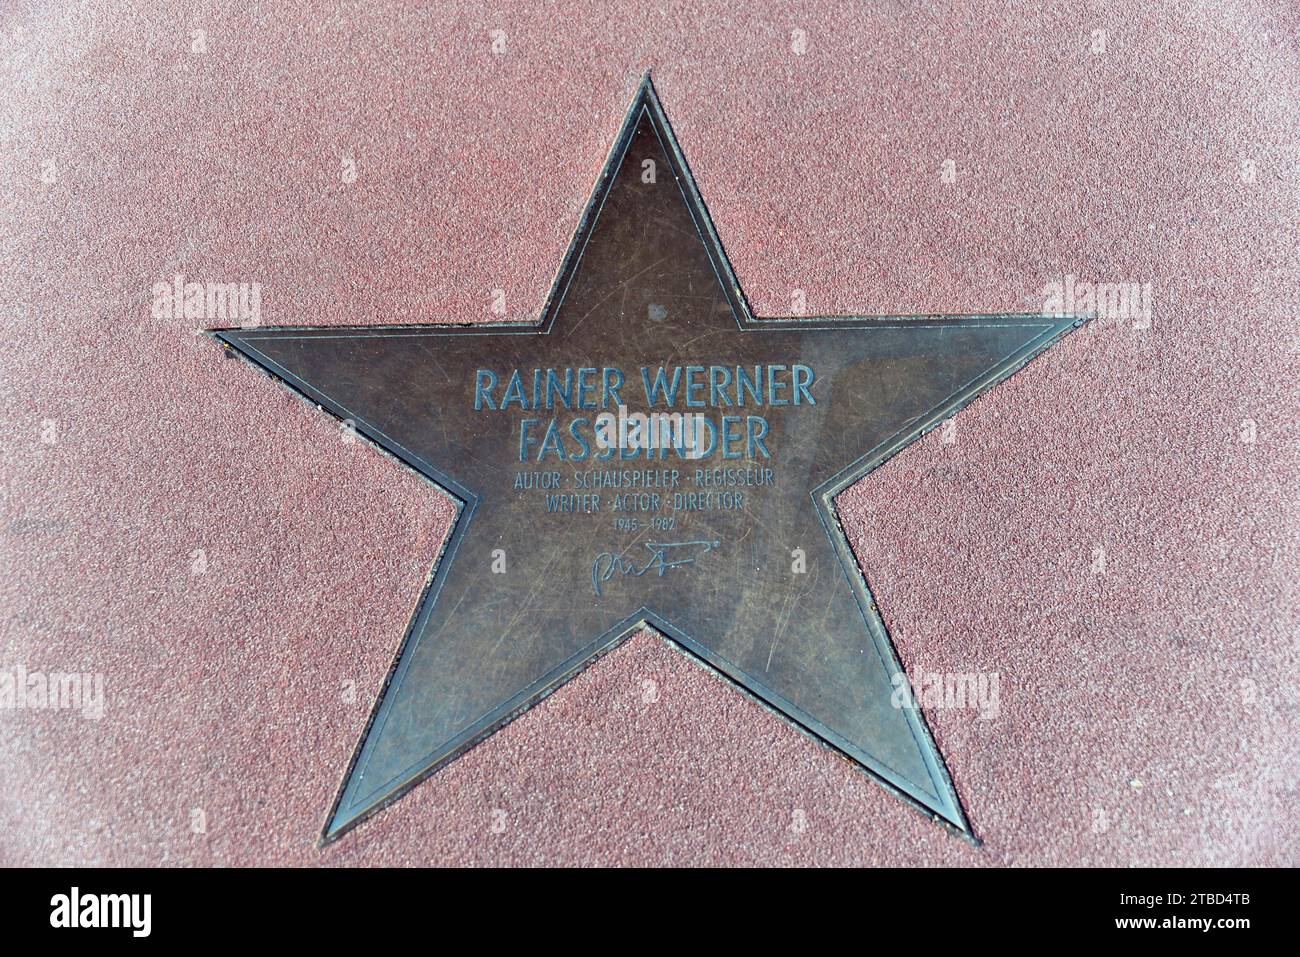 Star von Rainer Werner Fassbinder, Regisseur, Autor, Schauspieler, am Boulevard of Stars, Mitte, Berlin, Deutschland Stockfoto